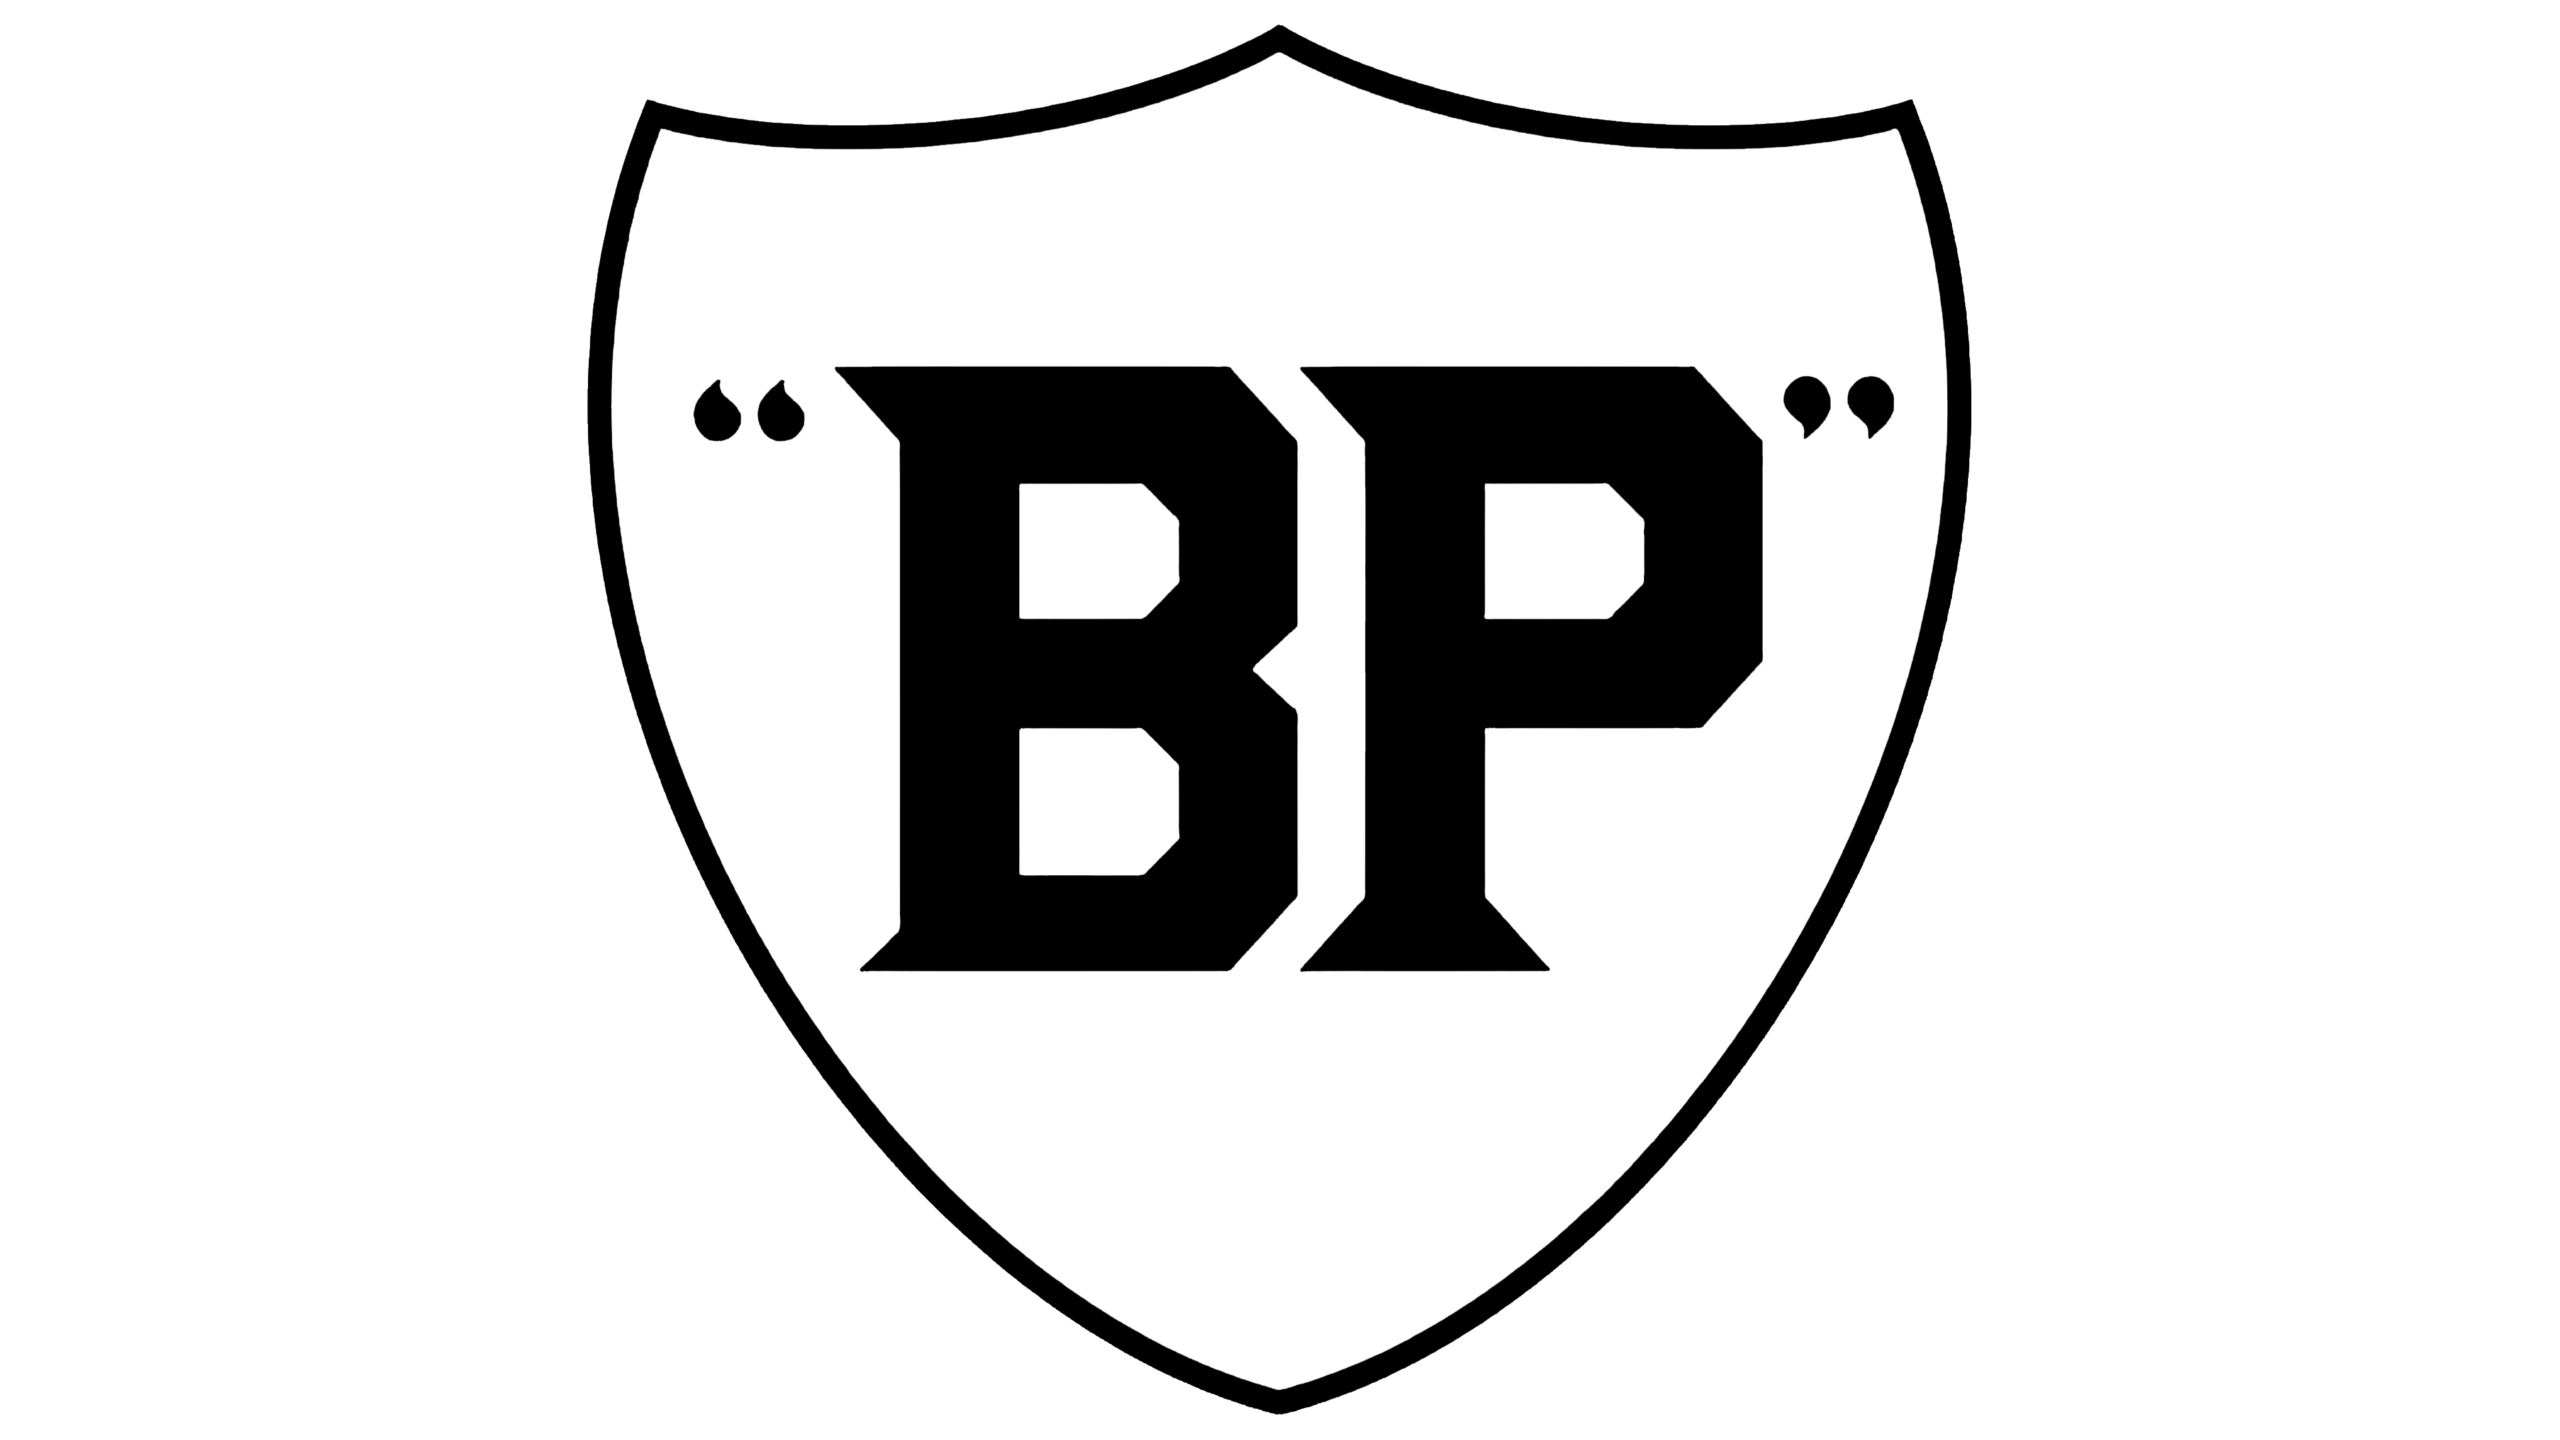 Logo BP de 1930 à 1947